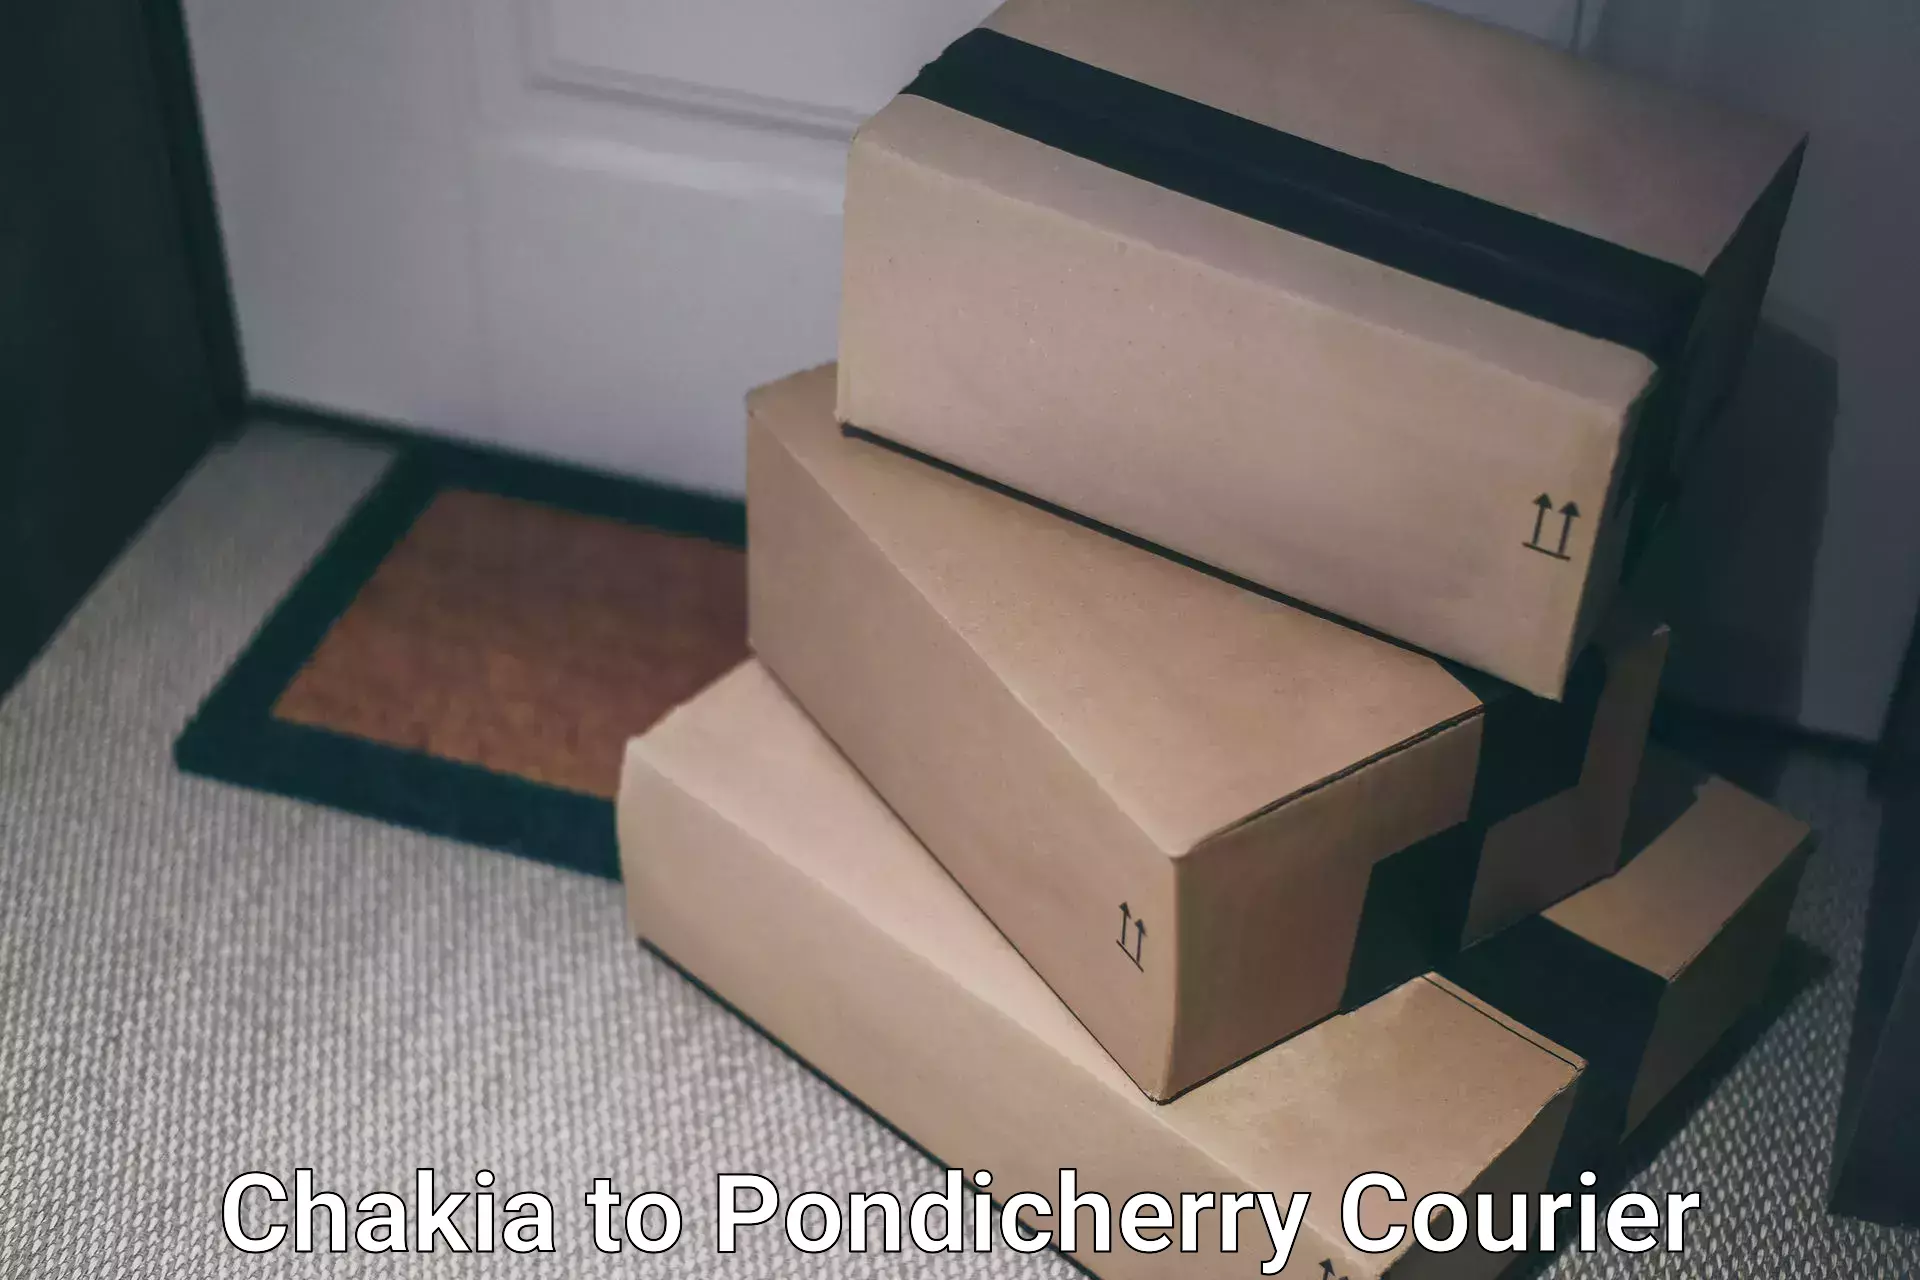 Courier app Chakia to Pondicherry